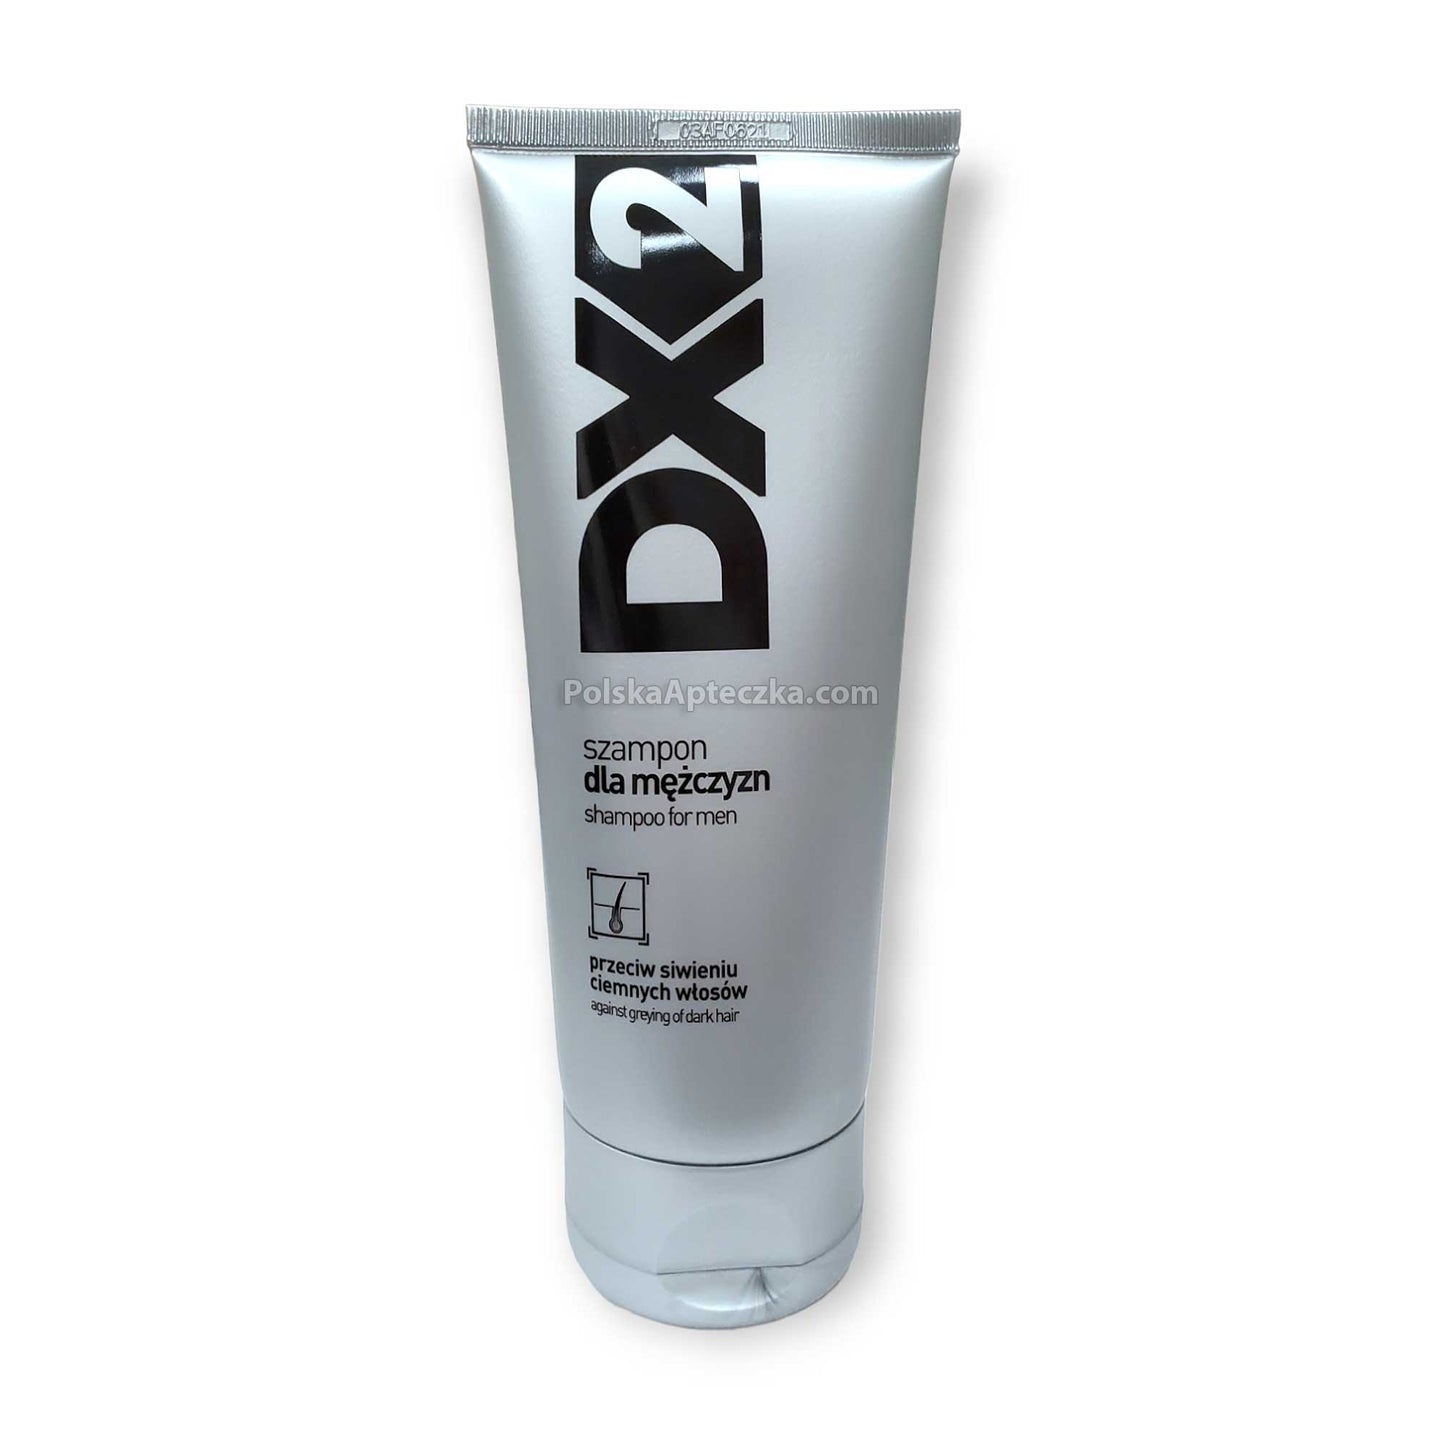 DX2 szampon przeciw siwieniu, 150ml